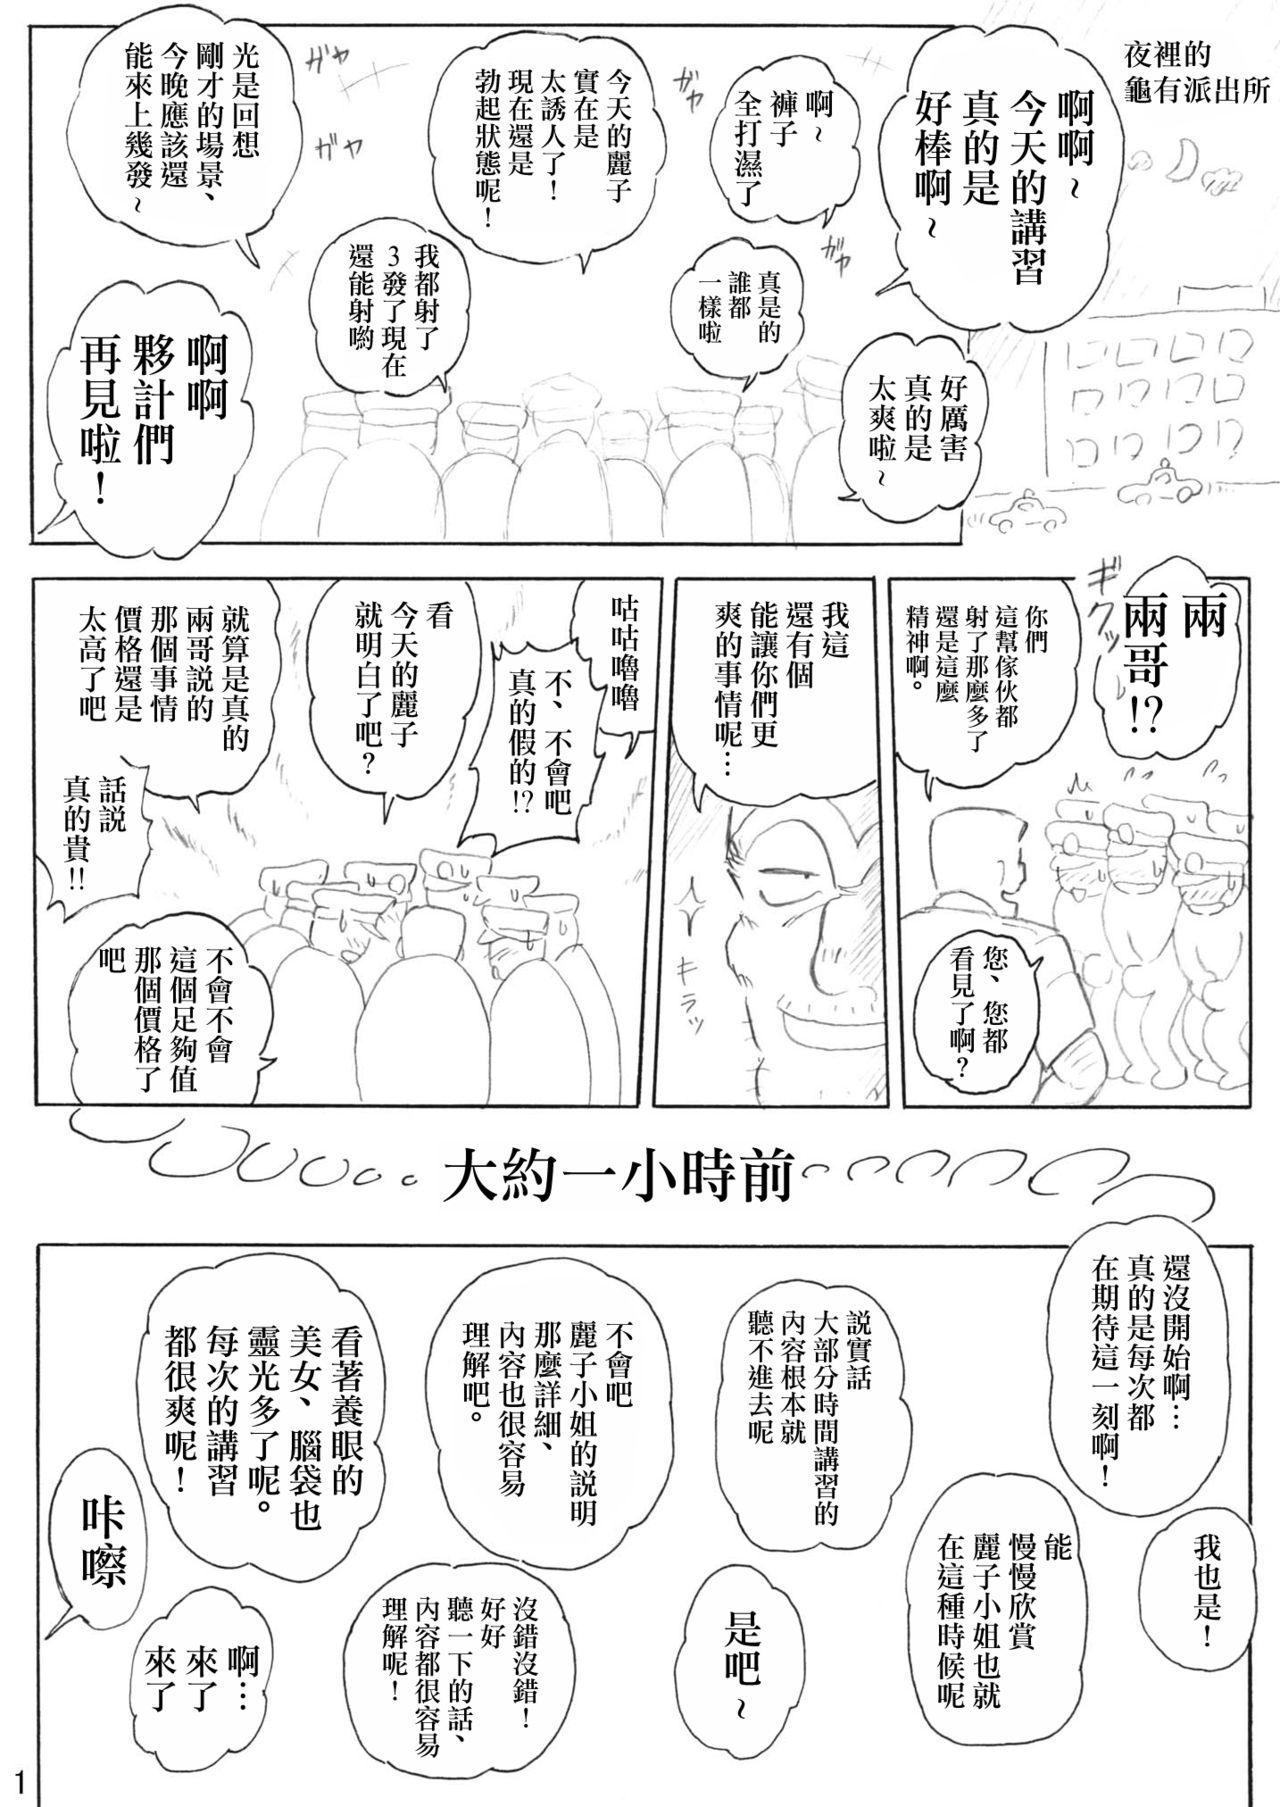 Piercing Uchiage Suihanki Gogou Ki Tsuika Rocket - Kochikame Close Up - Page 2